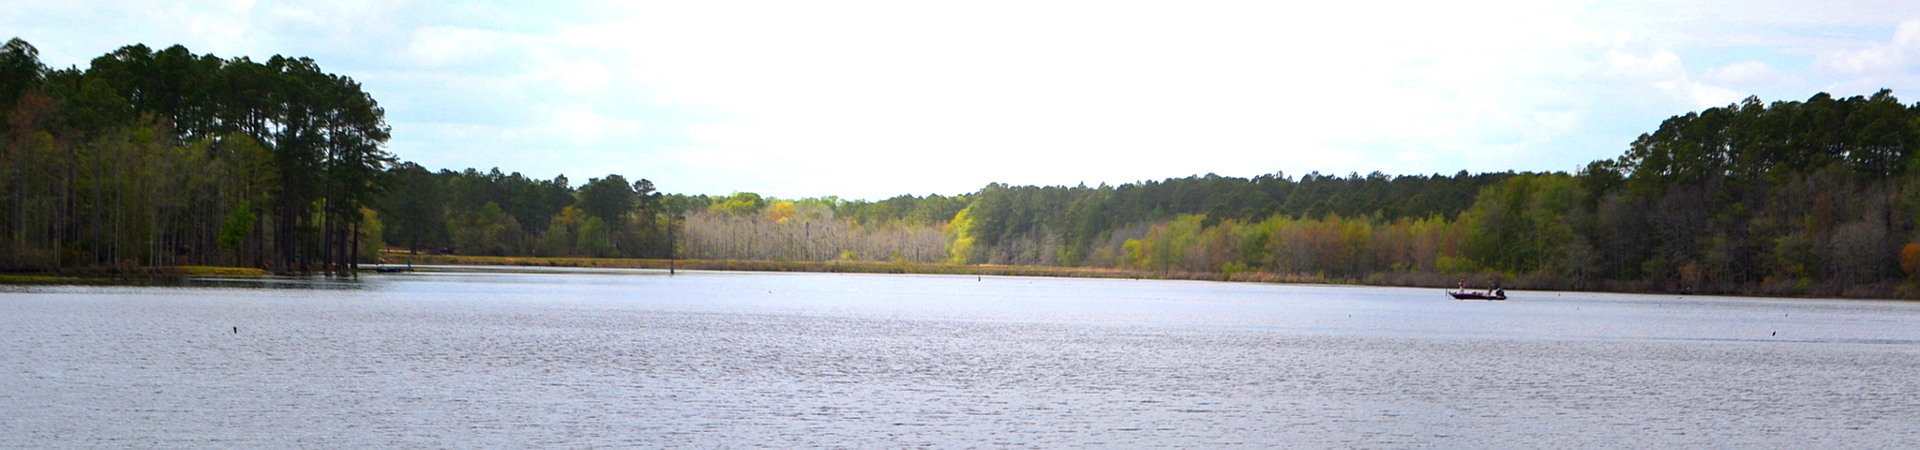 Lake at Evans County